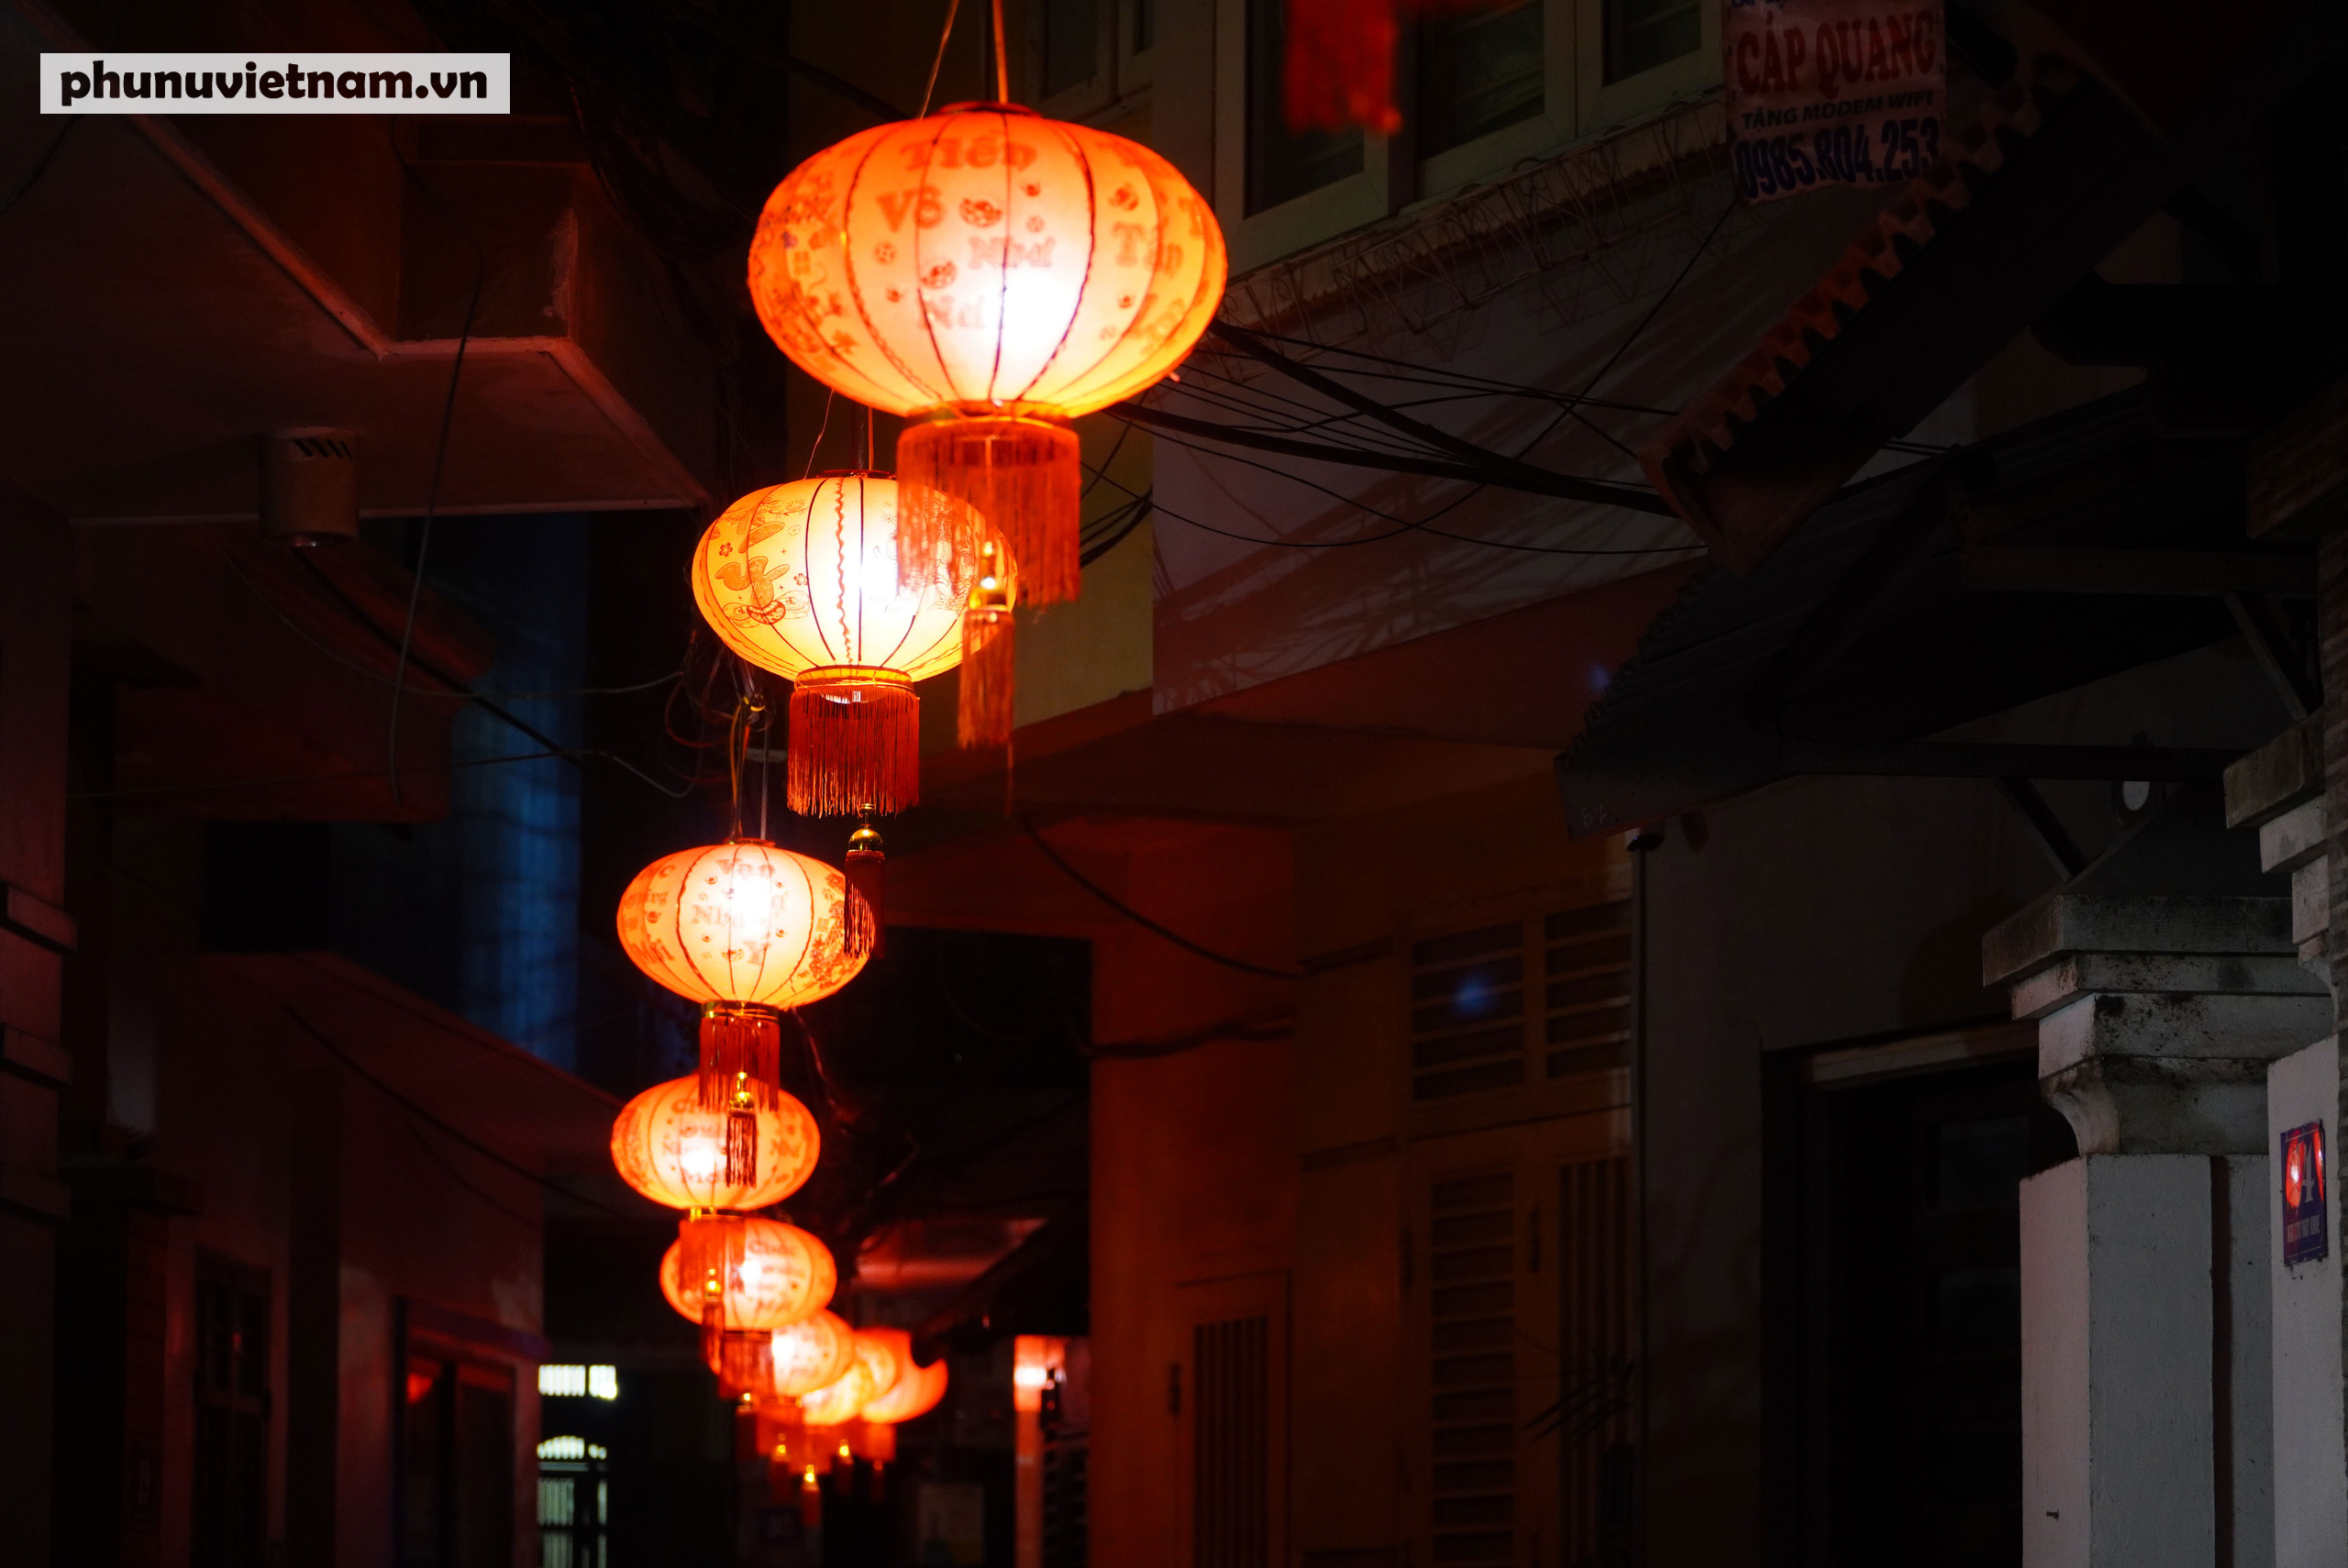 Hàng trăm đèn lồng đỏ lung linh trong ngõ nhỏ Hà Nội - Ảnh 20.